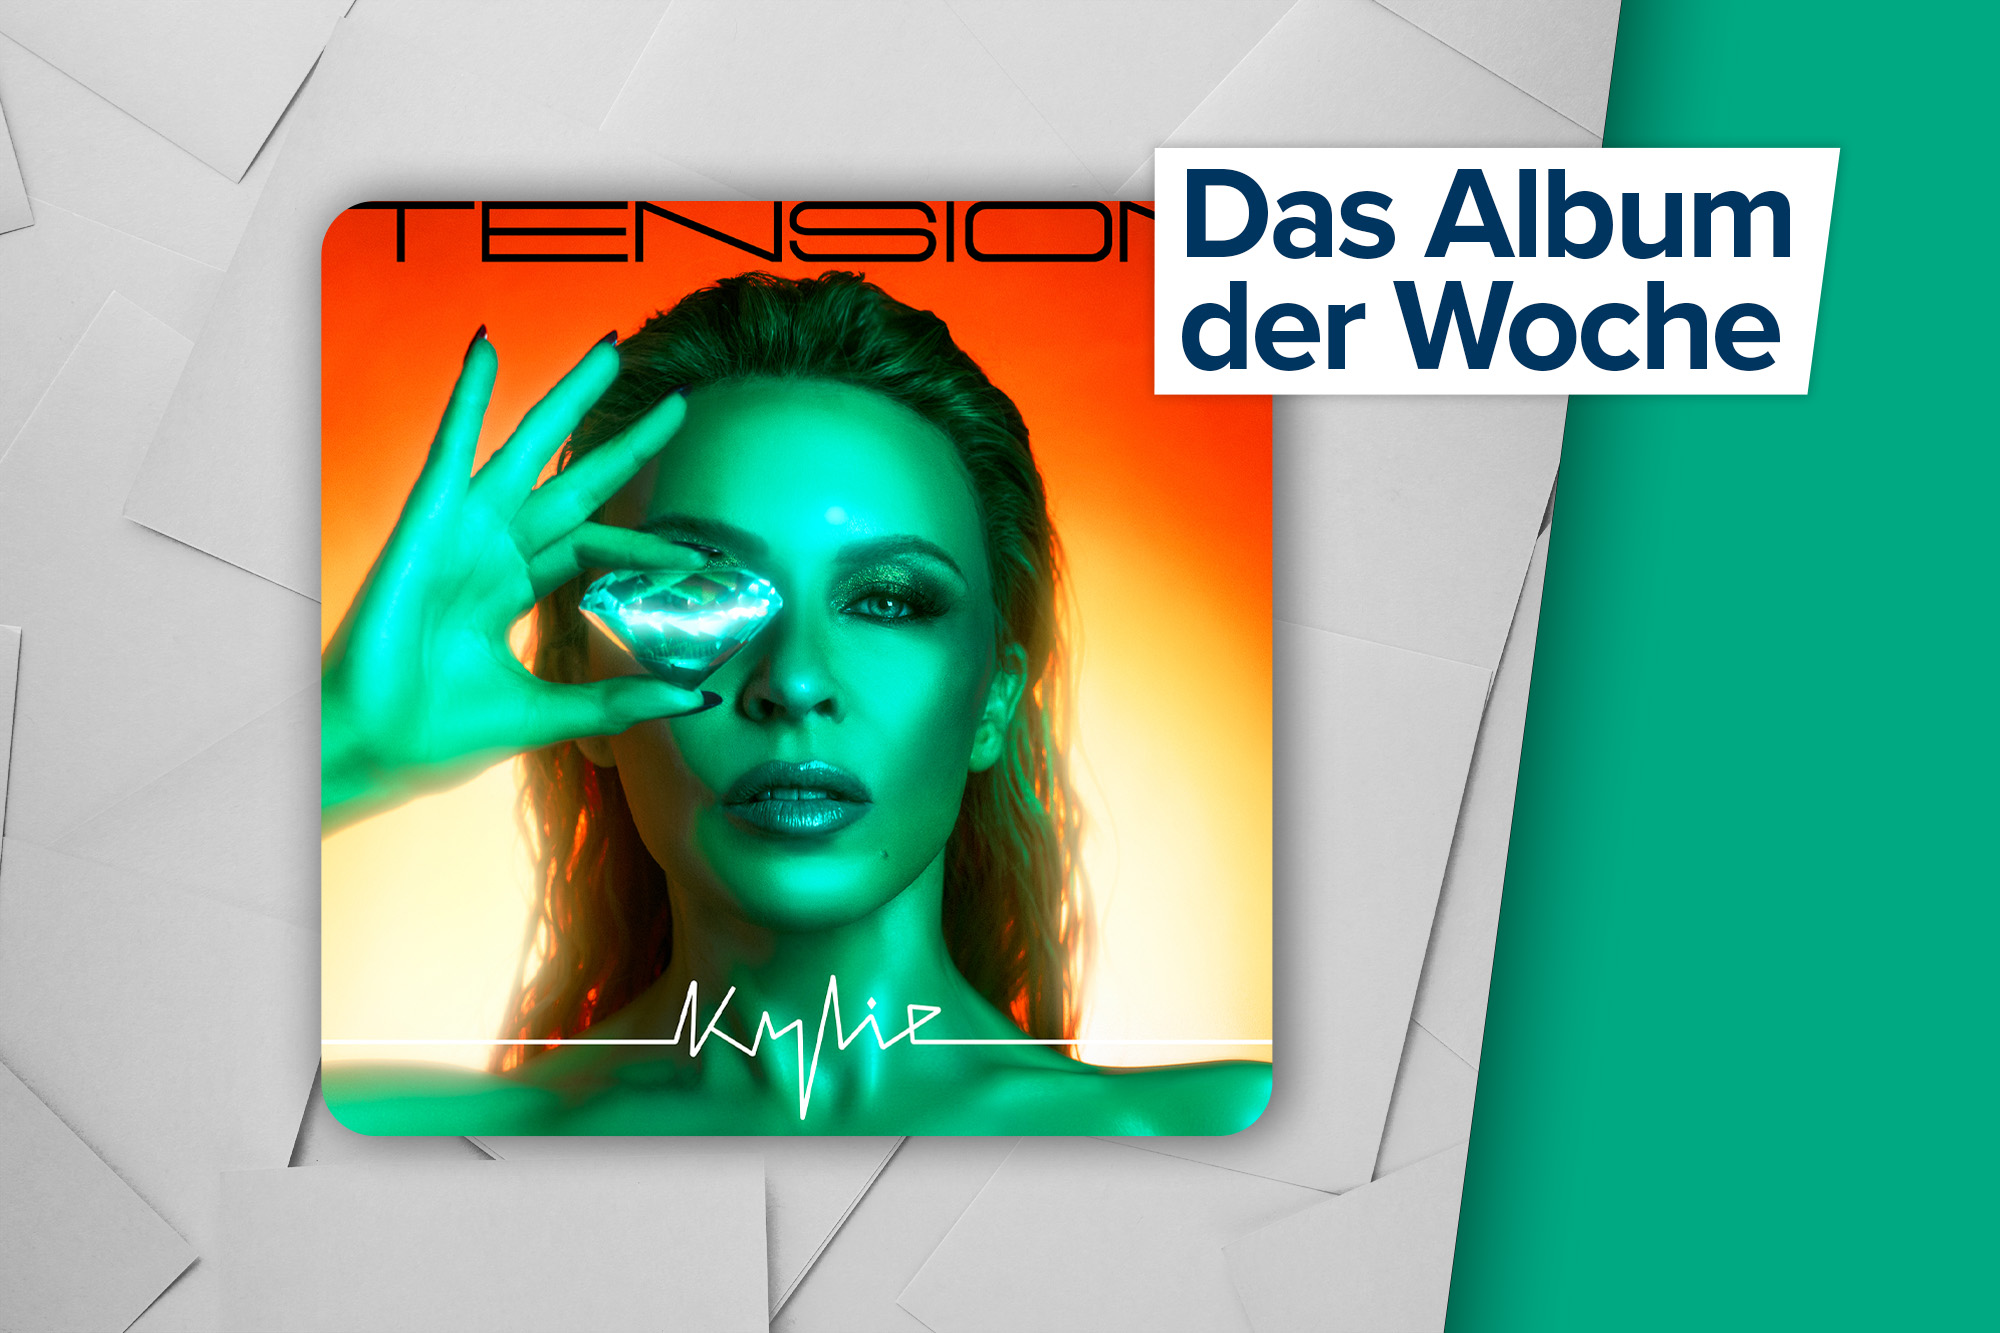 Das Album der Woche: "Tension" von Kylie Minogue (BMG Rights Management)